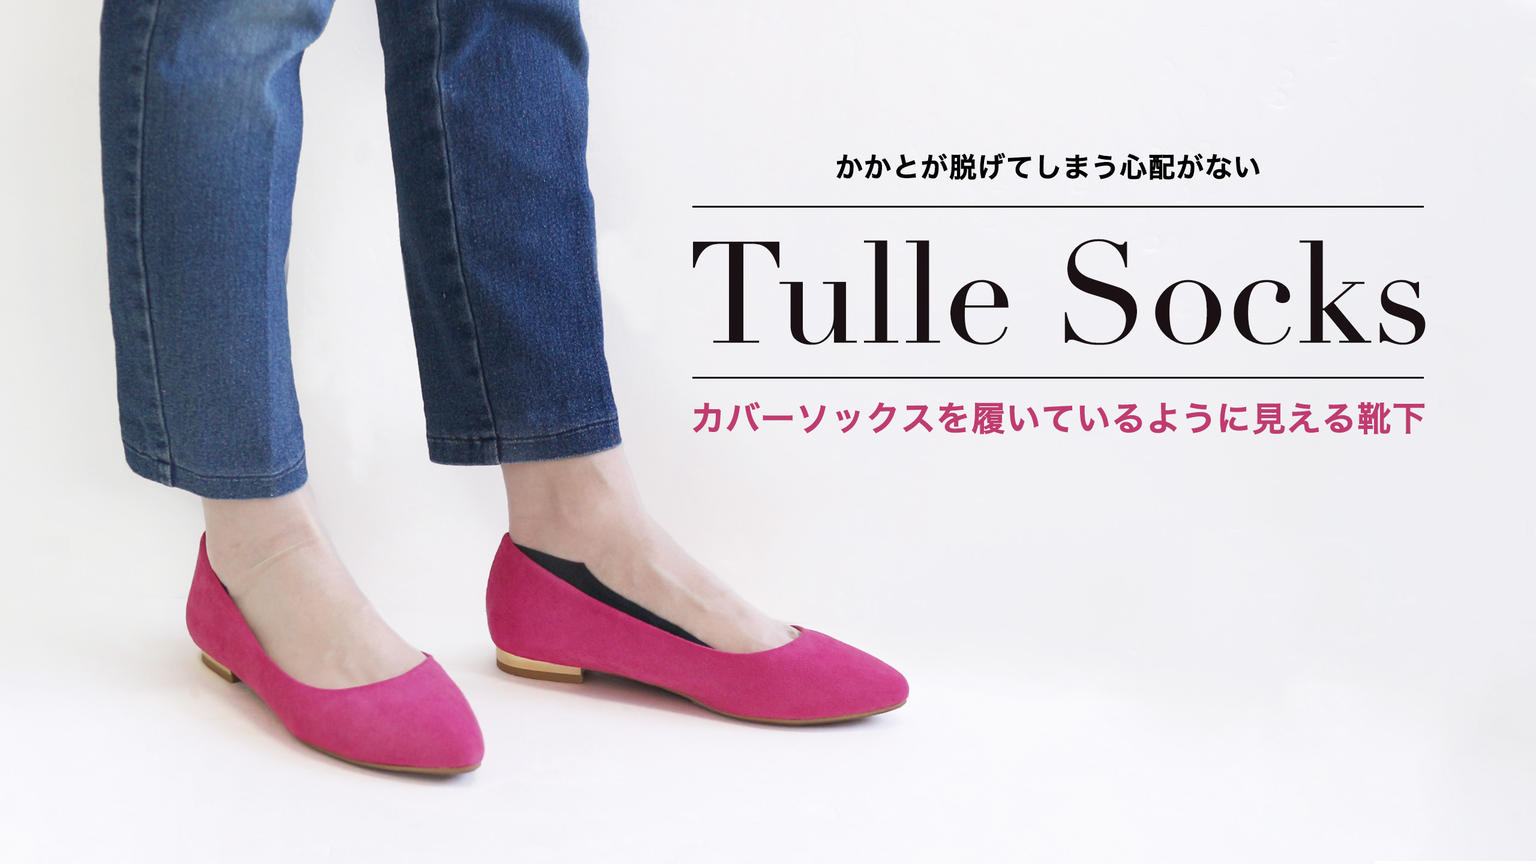 かかとが脱げてしまう心配がない カバーソックスを履いているような靴下 Tulle Socks 靴下屋公式通販 Tabio オンラインストア 送料無料